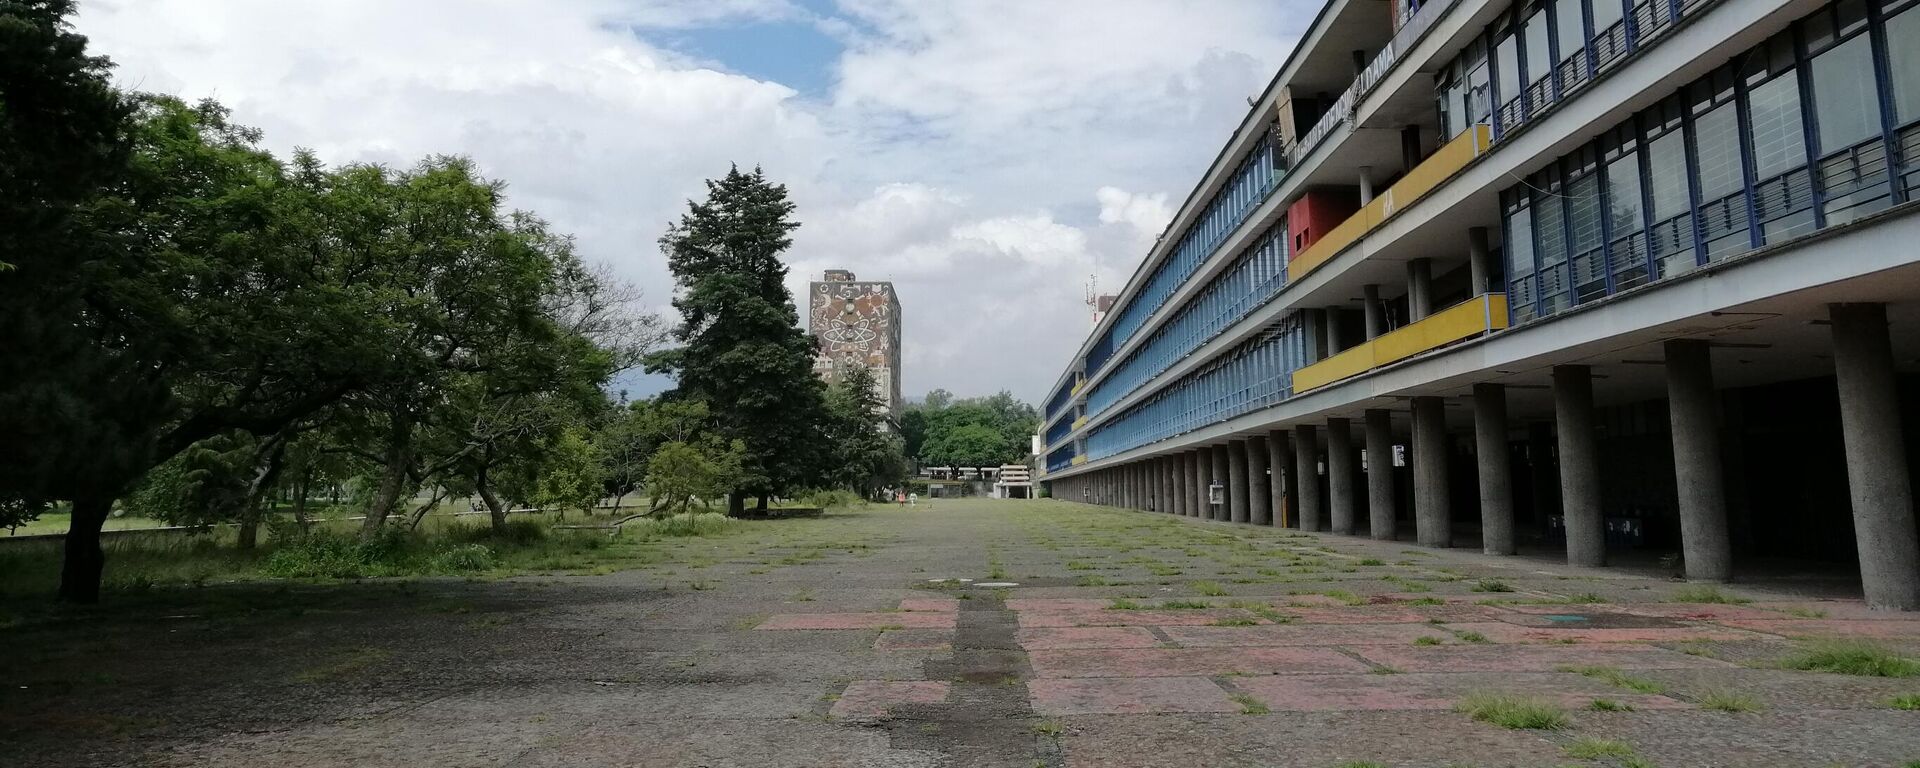 Ciudad Universitaria, campus central de la Universidad Nacional Autónoma de México - Sputnik Mundo, 1920, 22.10.2021